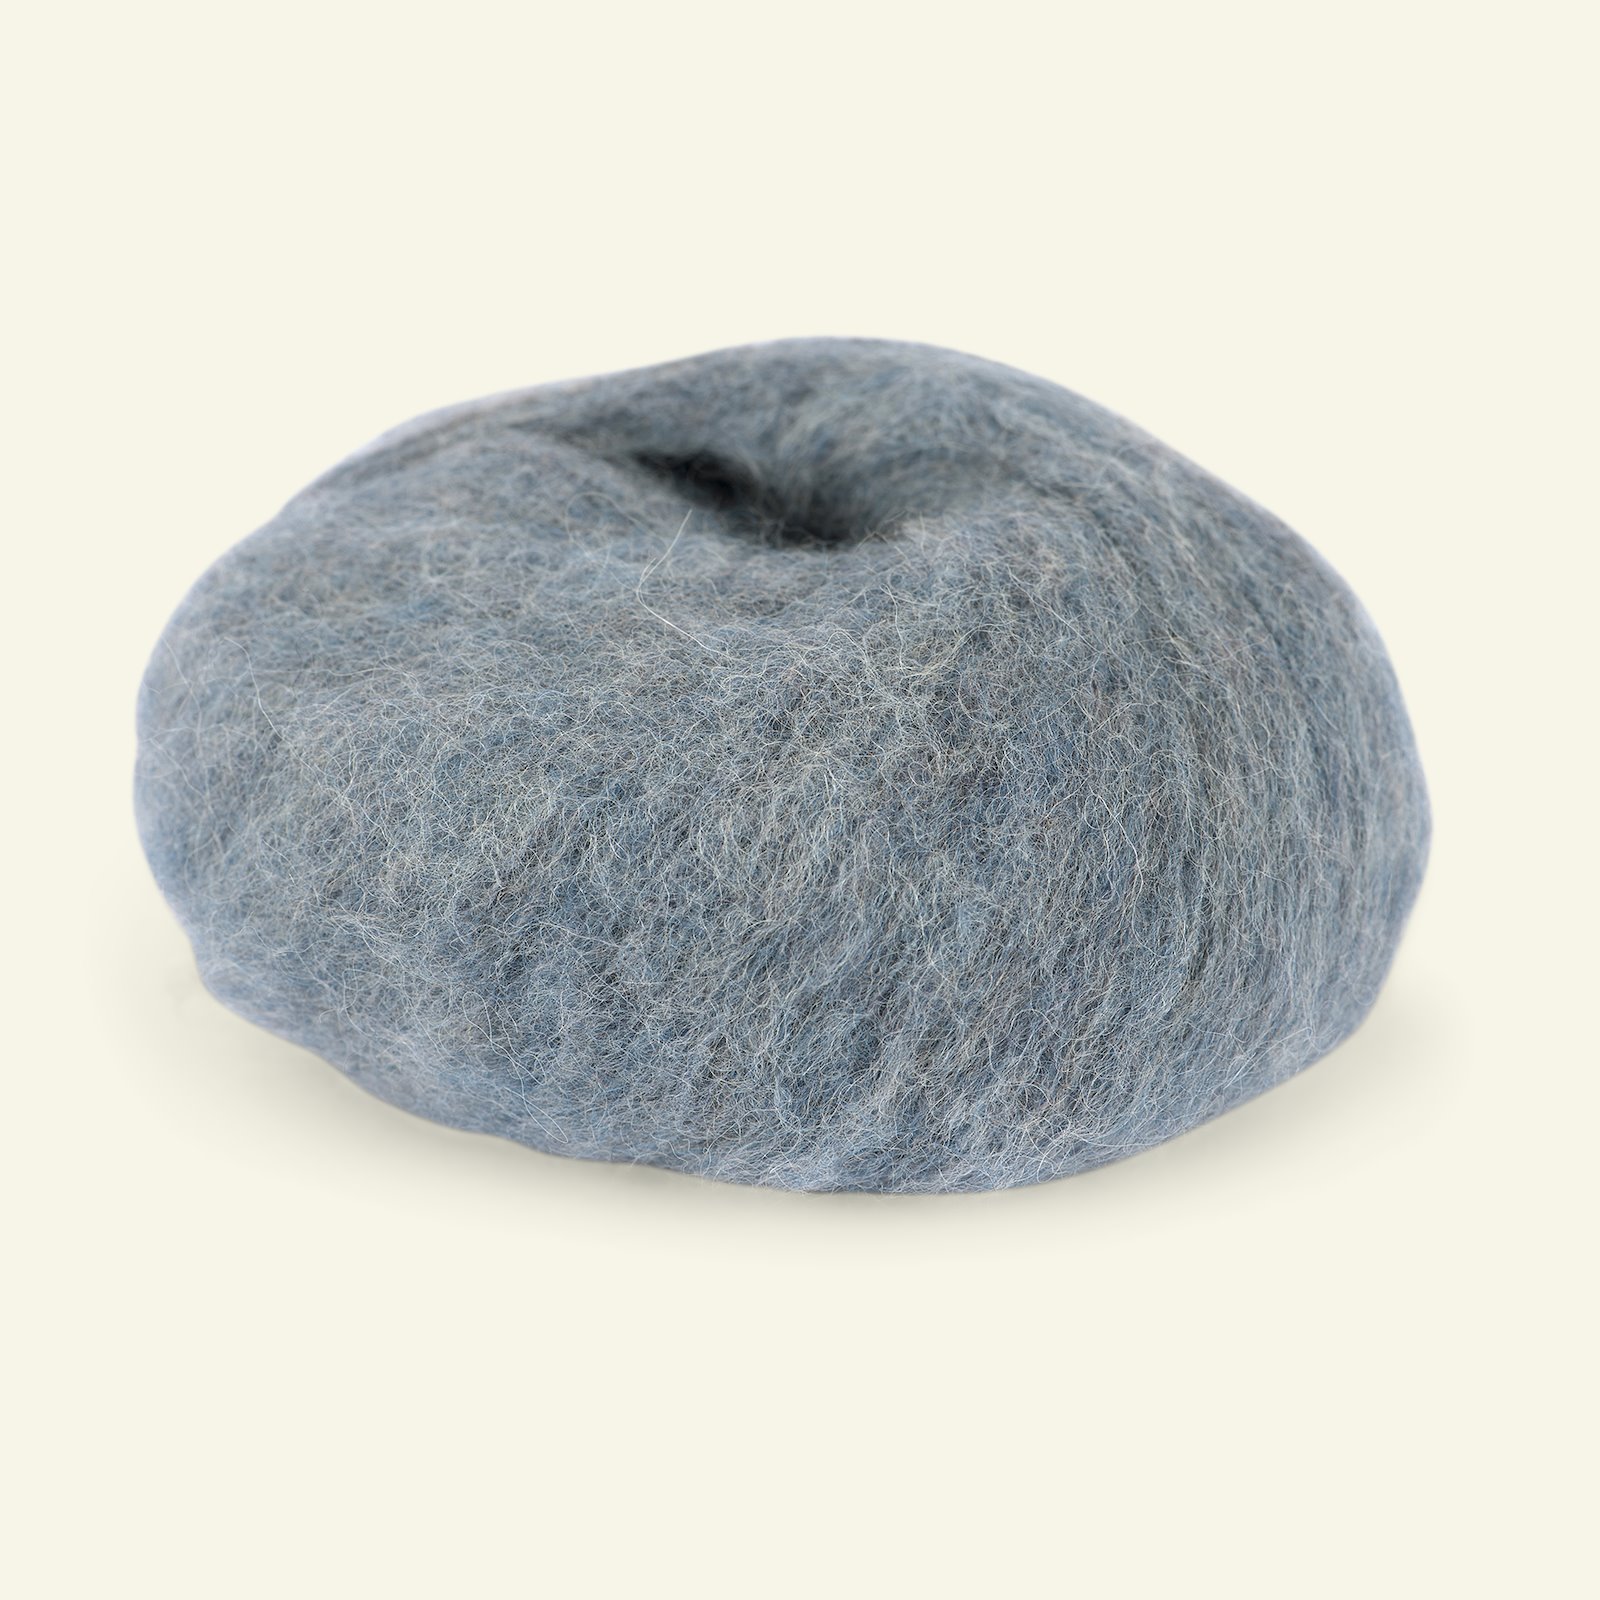 Du Store Alpakka, børsted alpacagarn "Faerytale", grå blå (740) 90000588_pack_b